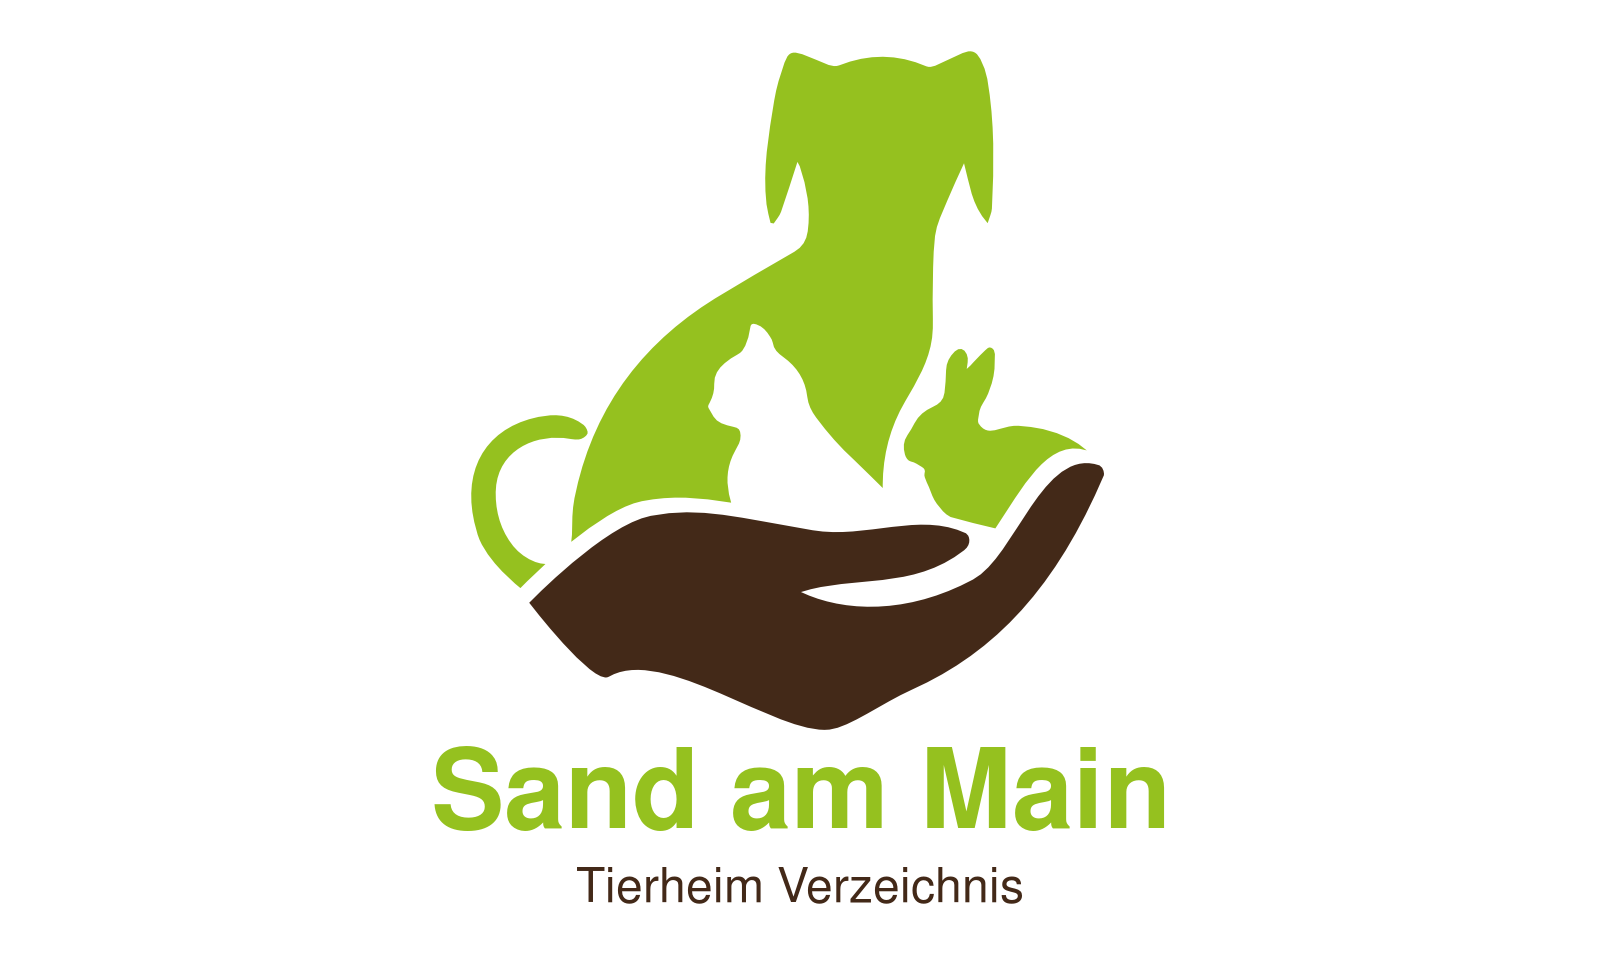 Tierheim Sand am Main